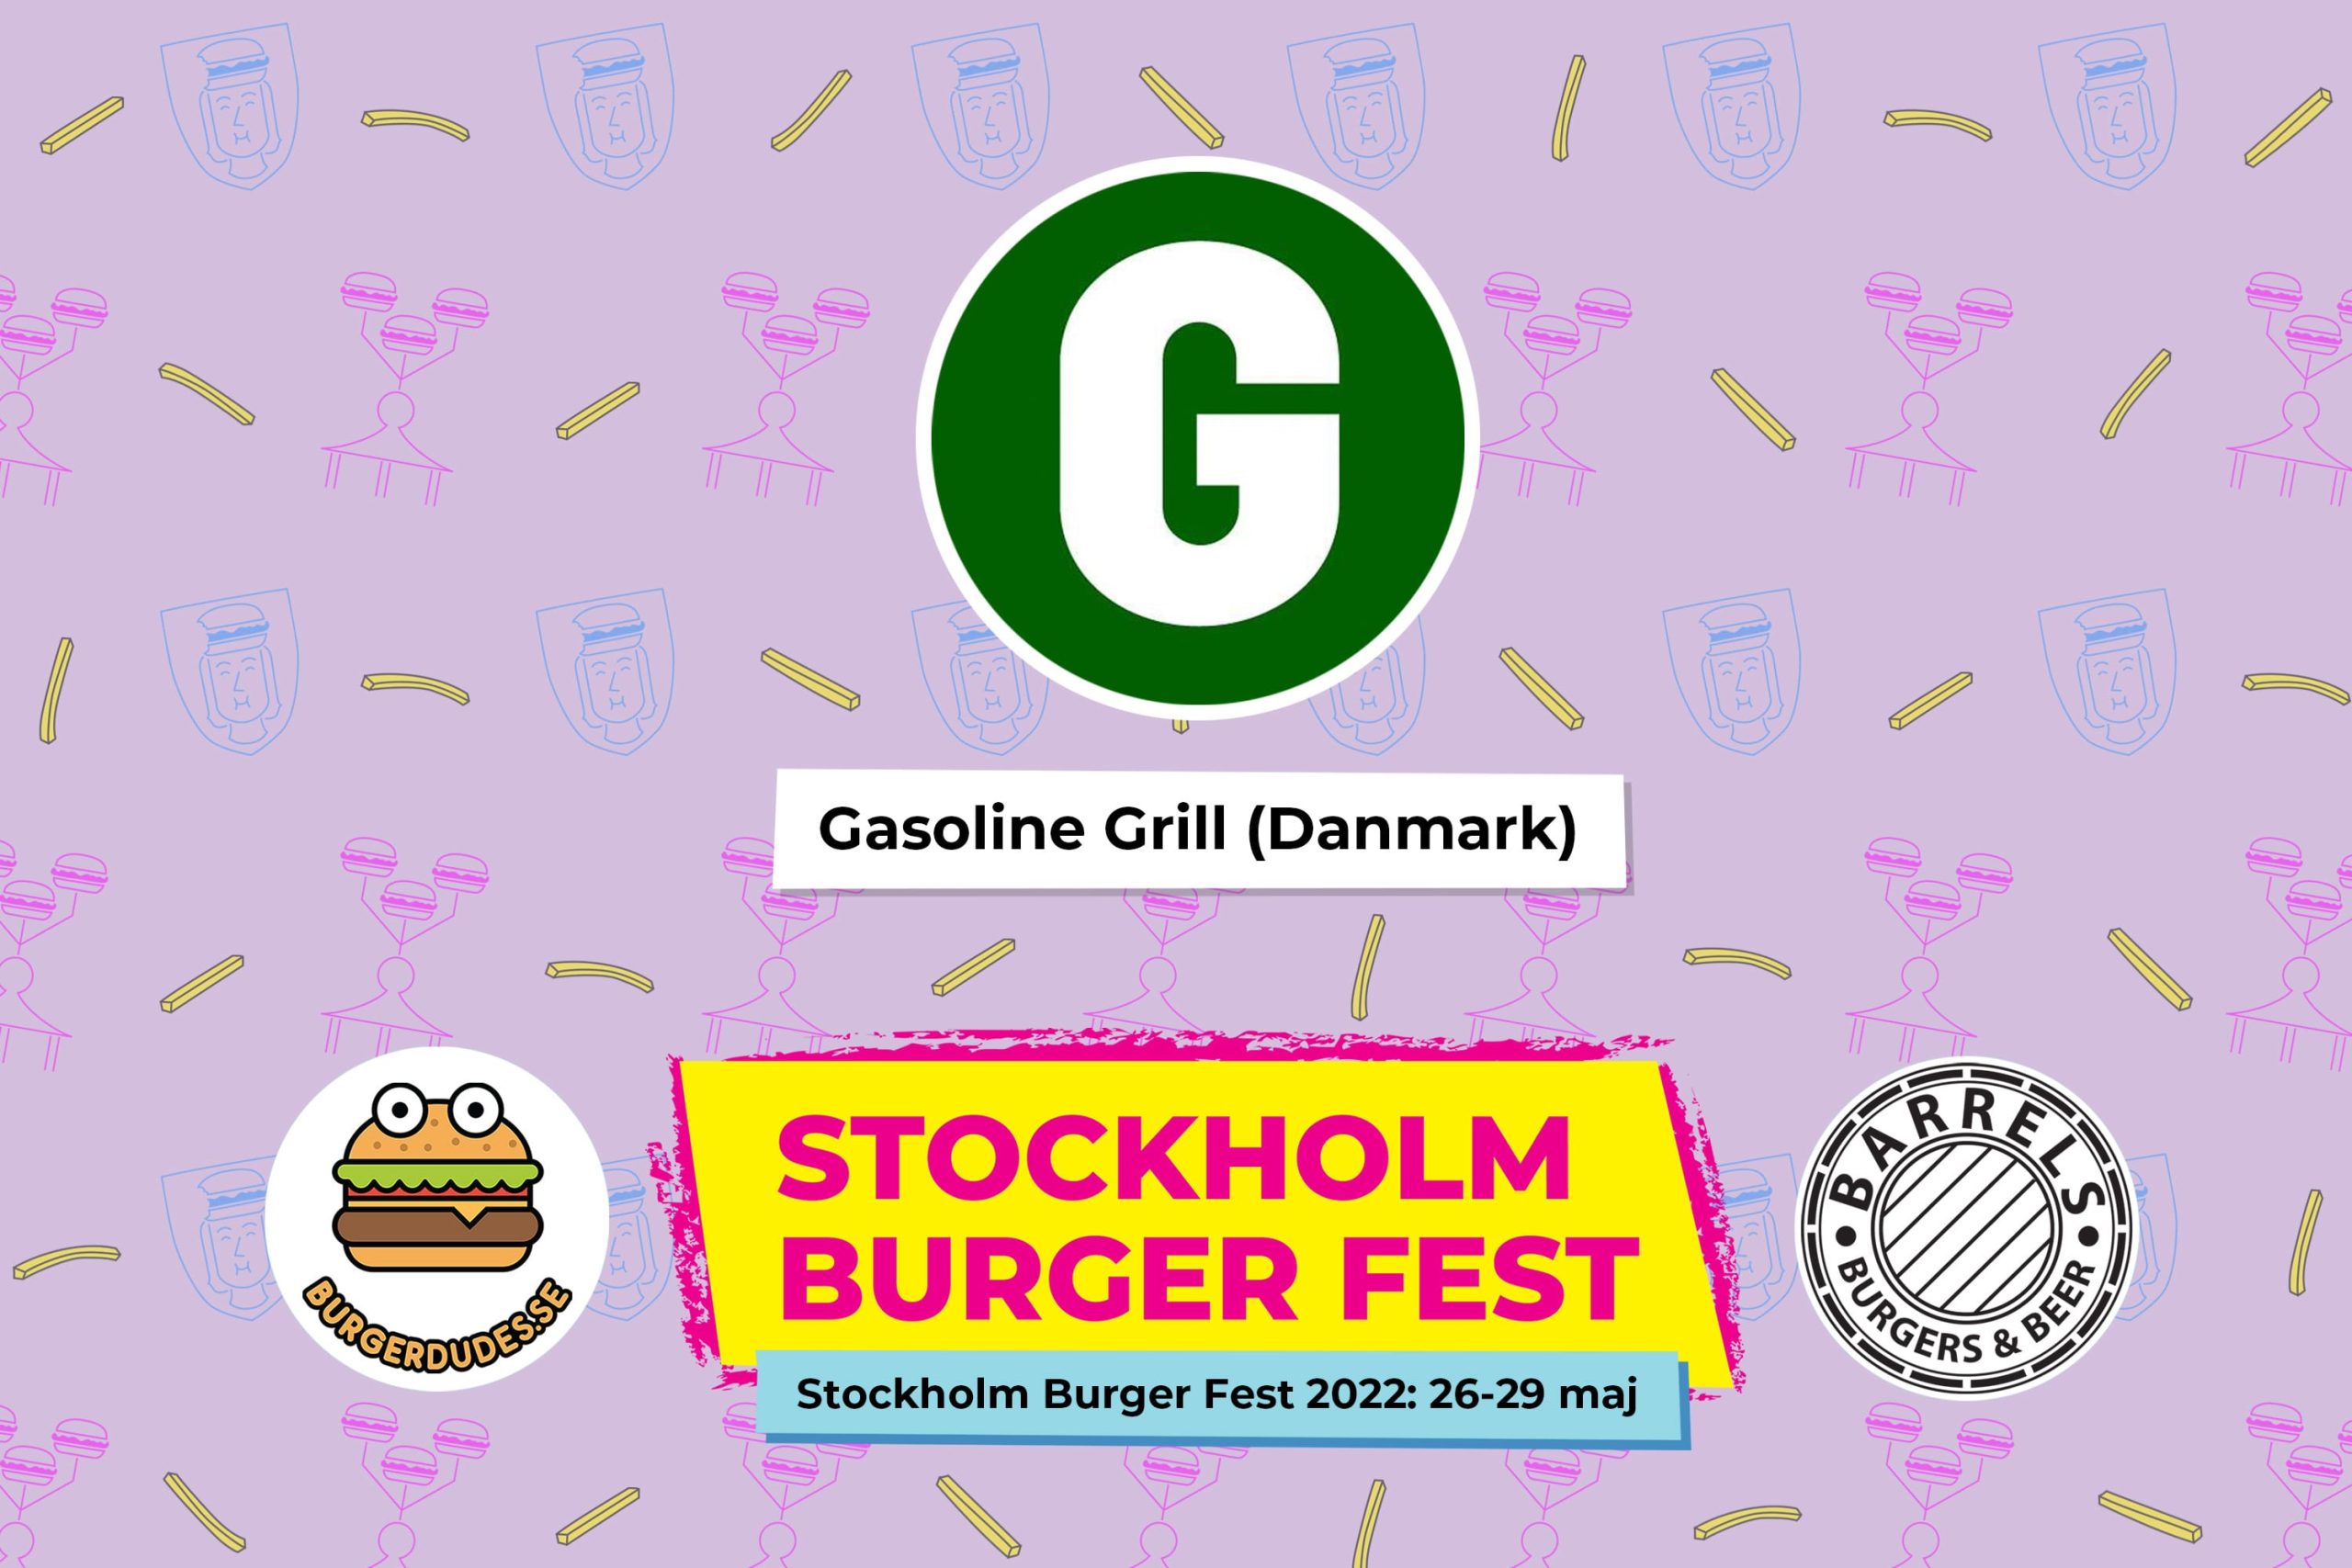 Stockholm Burger Fest 2022: Gasoline Grill